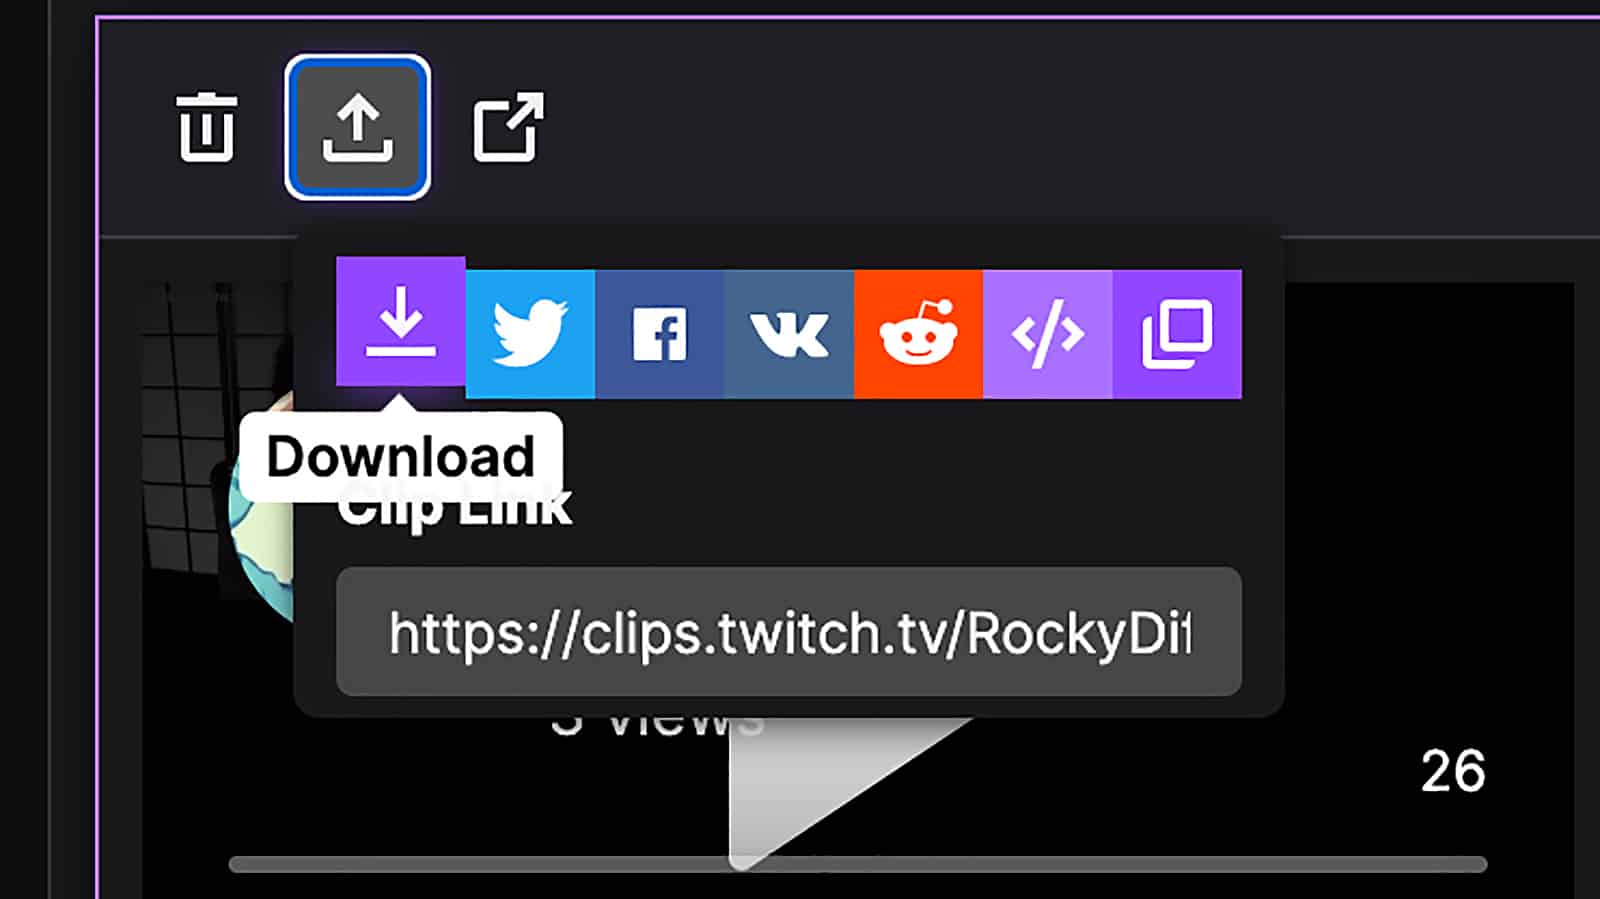 屏幕截圖顯示如何保存和下載Twitch上的剪輯